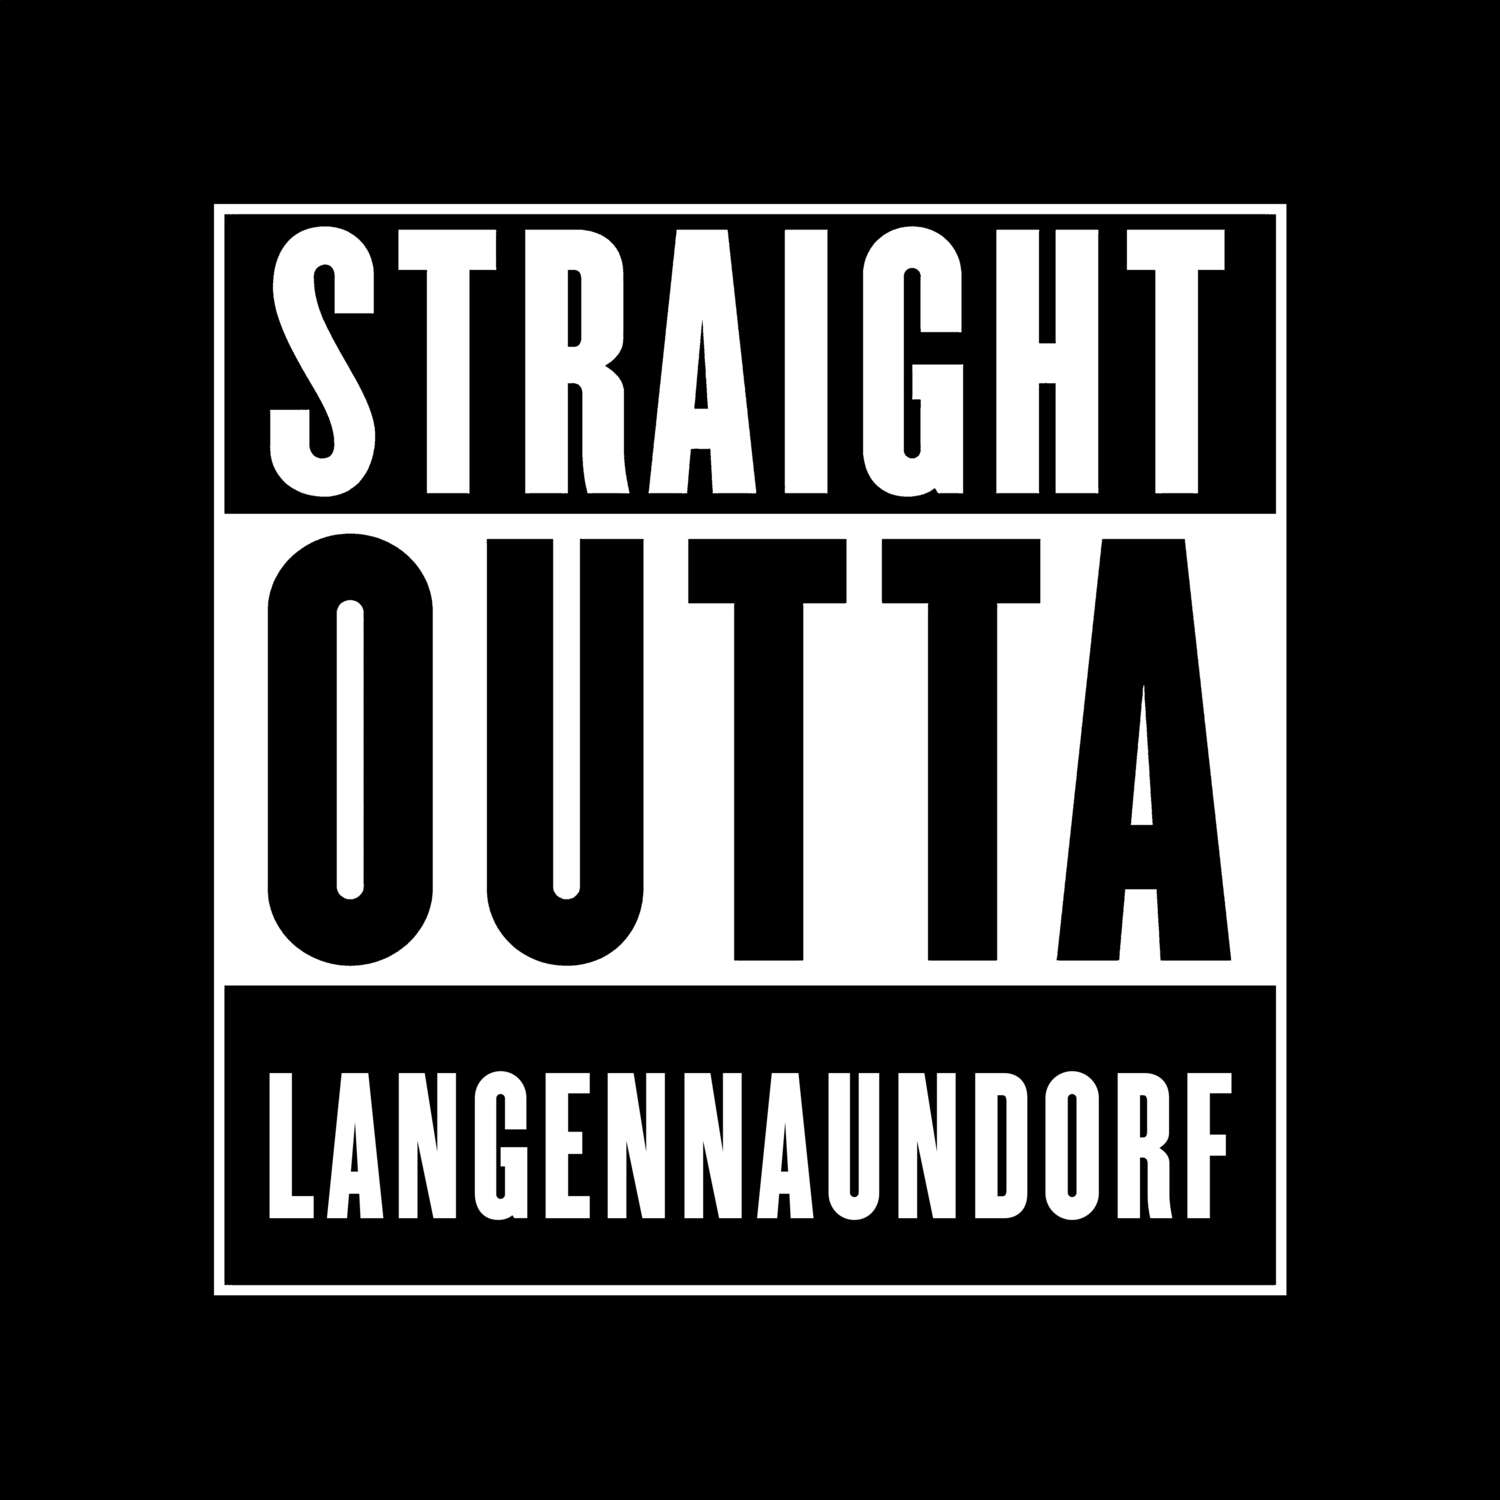 Langennaundorf T-Shirt »Straight Outta«